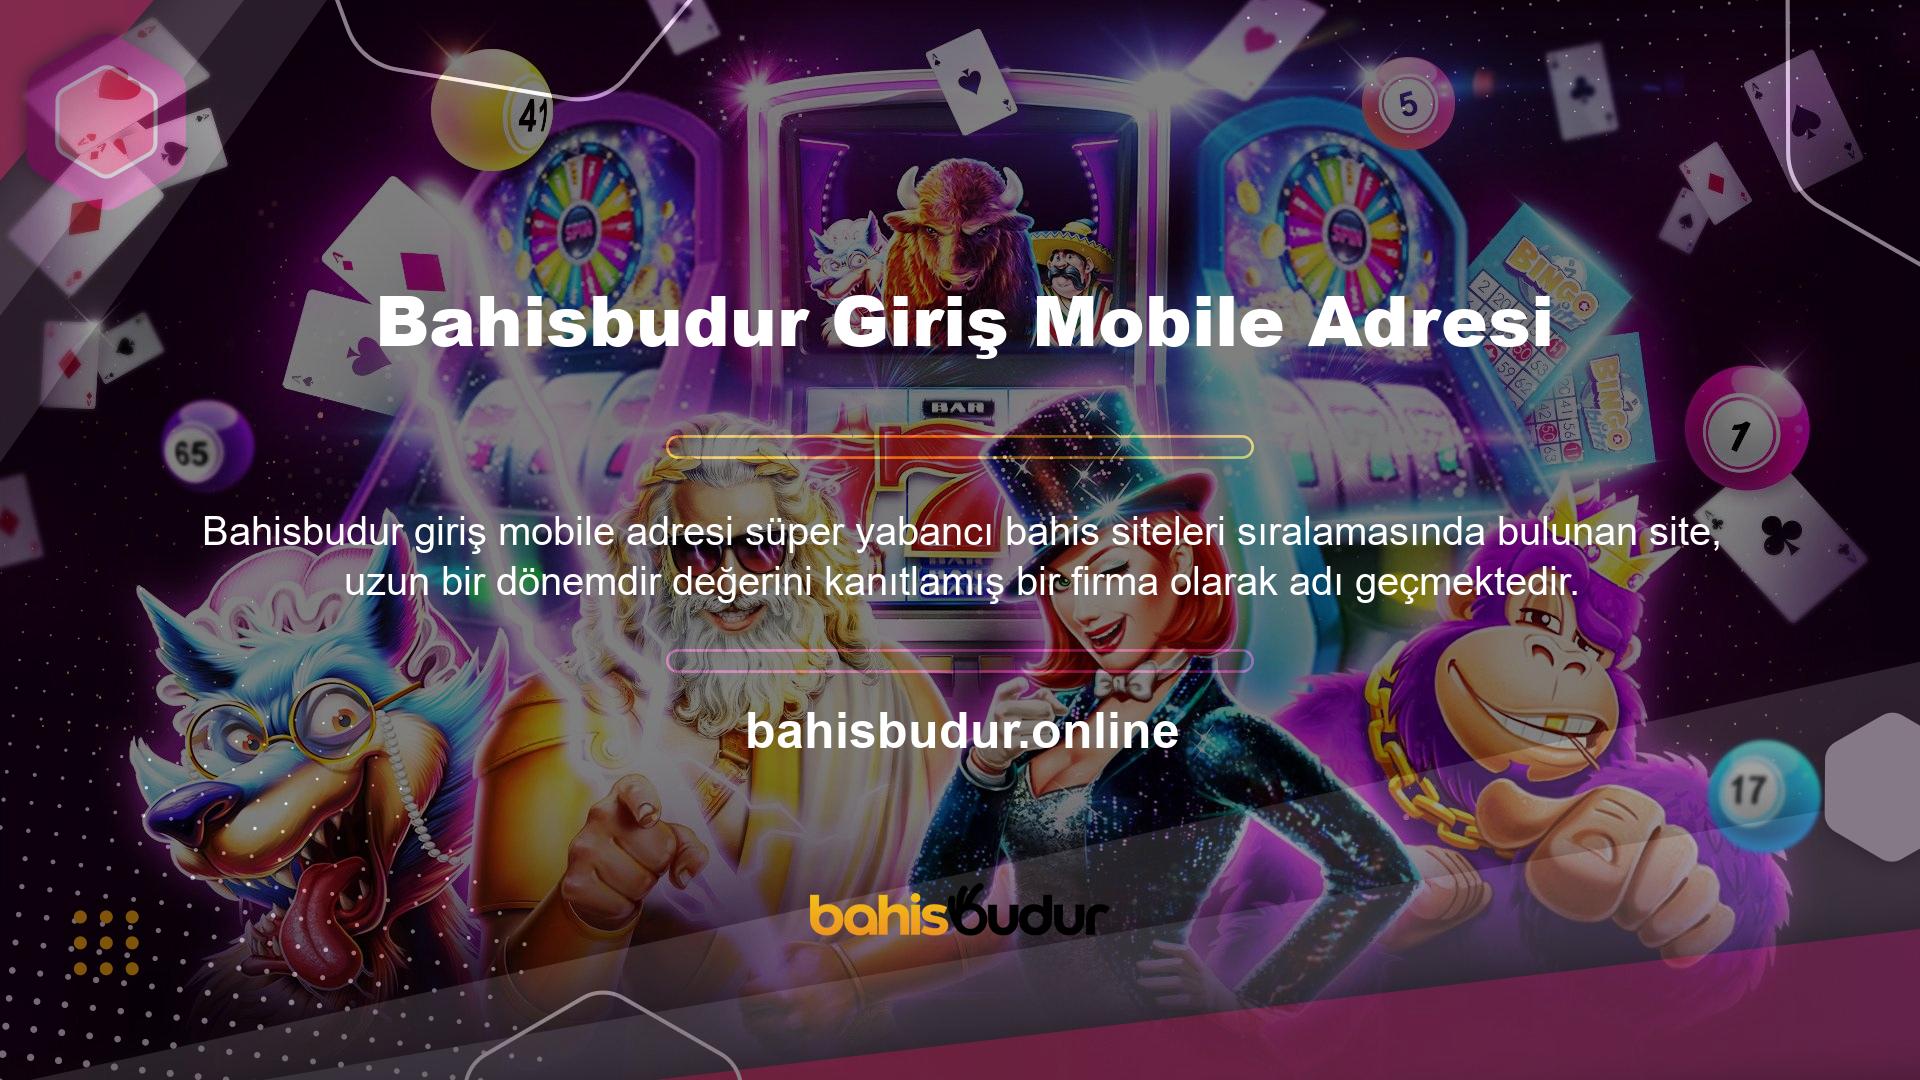 Avrupa’nın birçok kesiminde başlayan spor mücadelelerinin tamamını, Bahisbudur canlı skor opsiyonu vasıtası ile ücret vermeden hemen deneyin!Problem olmadan oyun oynamak amaçlayanlara şirket, Huawei gibi cihazlar için optimize yapılmış internet sayfasını üretmiştir